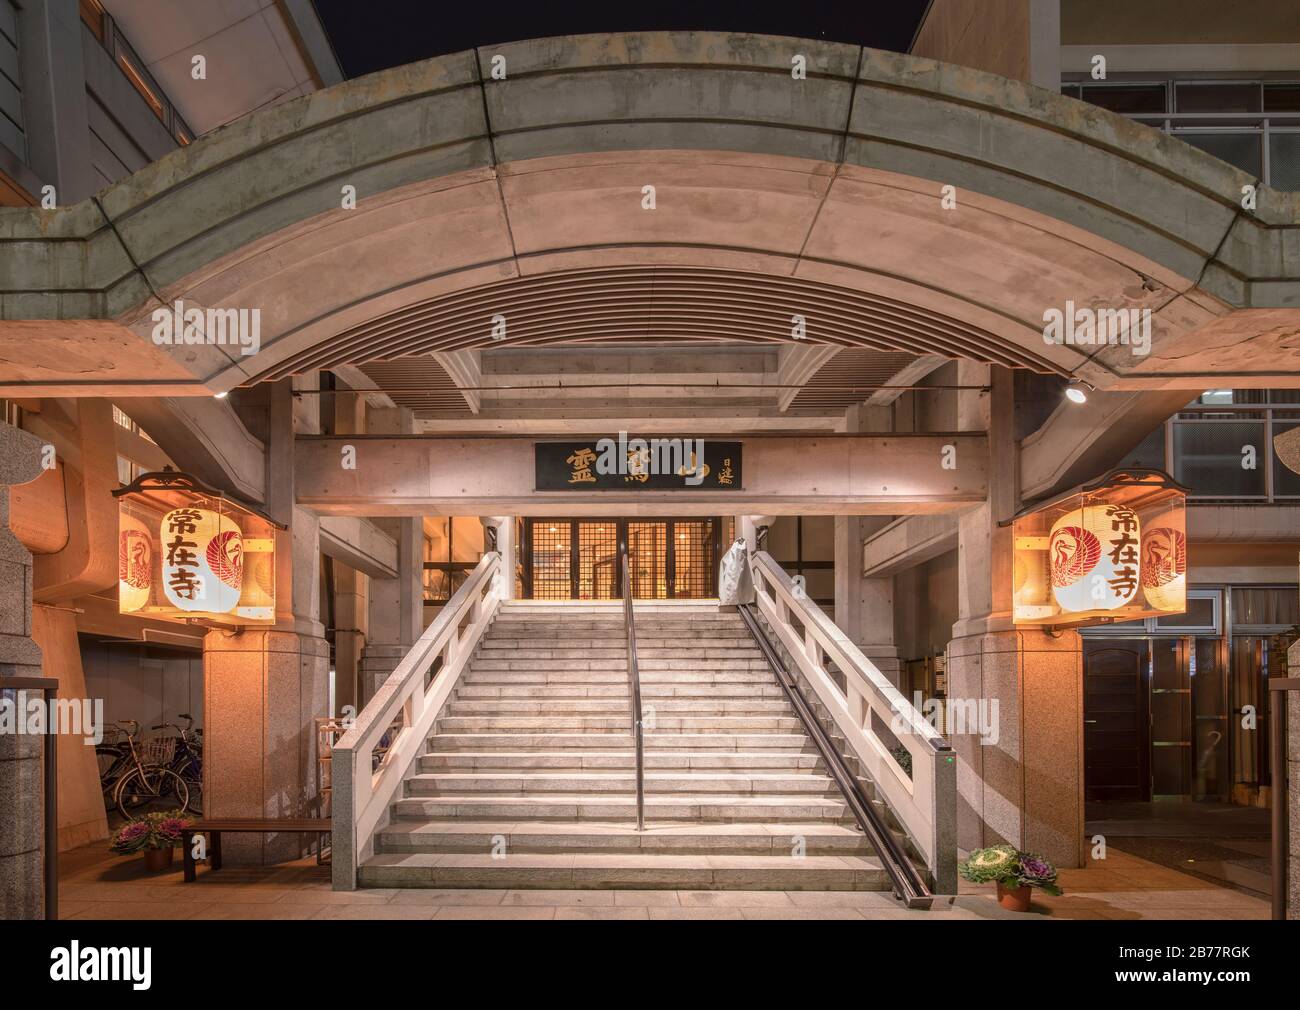 tokyo, giappone - marzo 12 2020: Moderno ingresso in cemento illuminato con lanterne di carta del tempio Jozaiji della setta buddista di Nichiren a Ikebukur Foto Stock